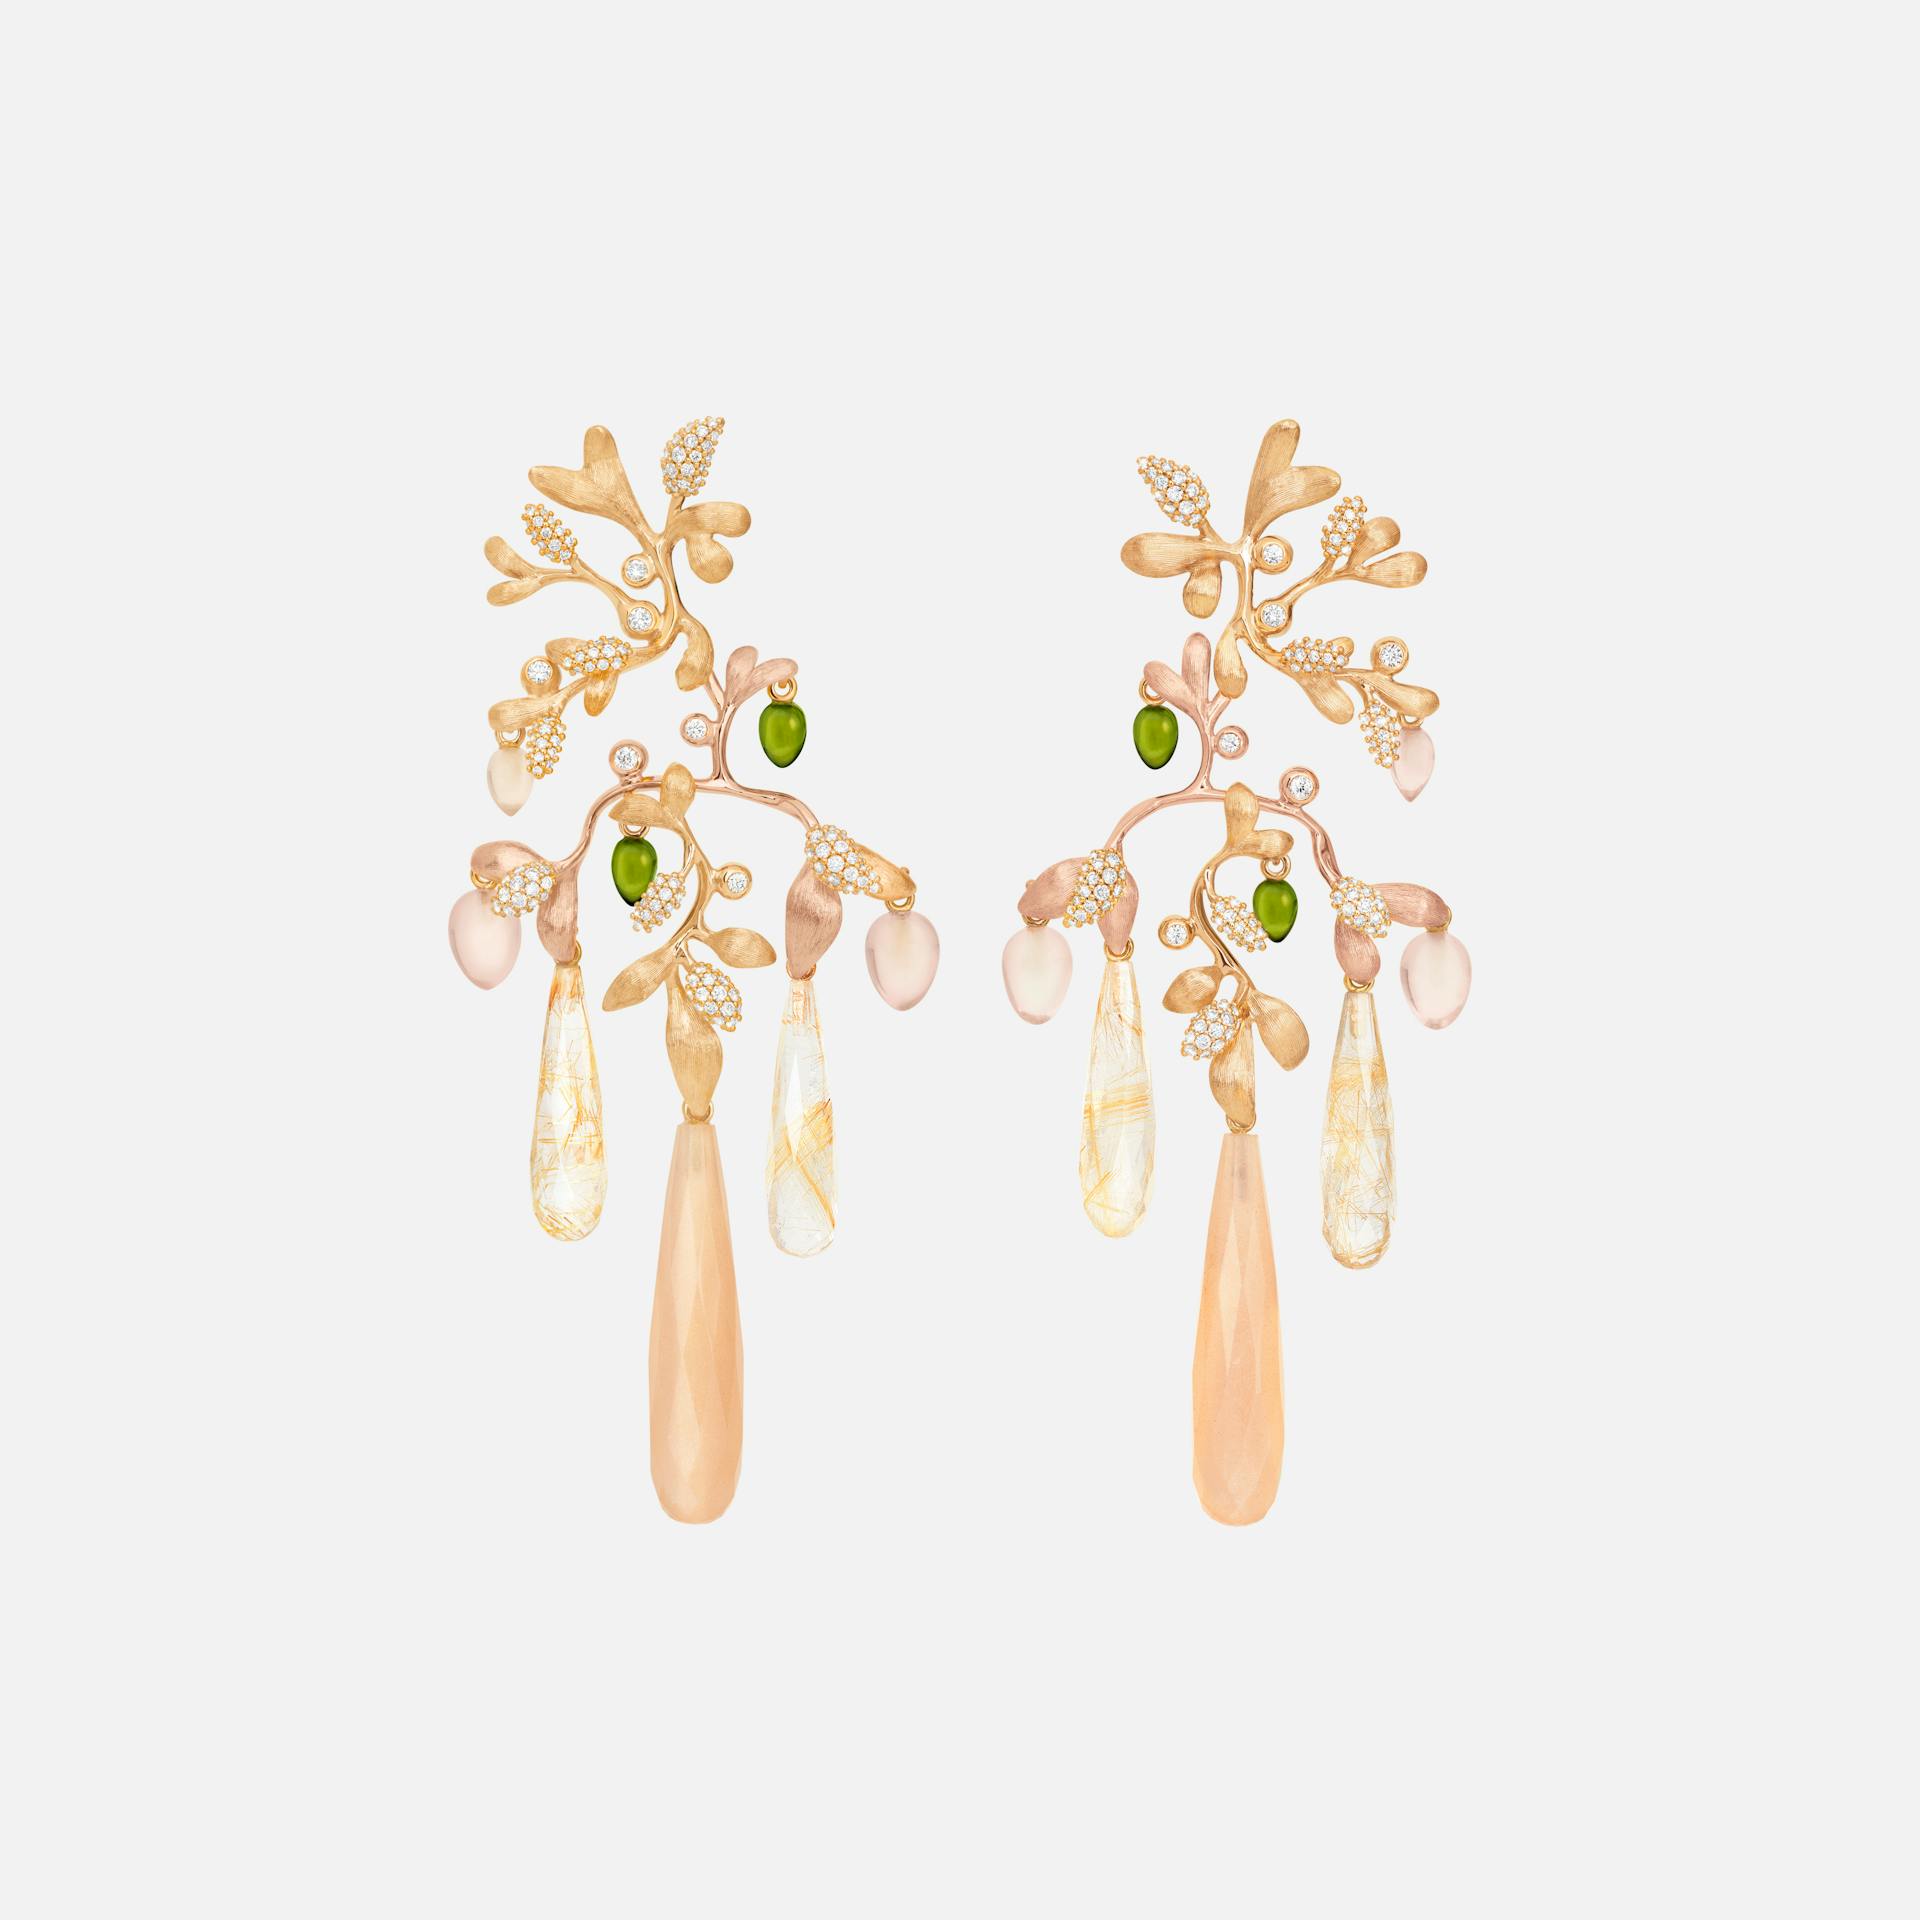 Gipsy Earrings in 18kt Gold w Diamonds, Moonstone, Quartz & Tourmaline   |  Ole Lynggaard Copenhagen 